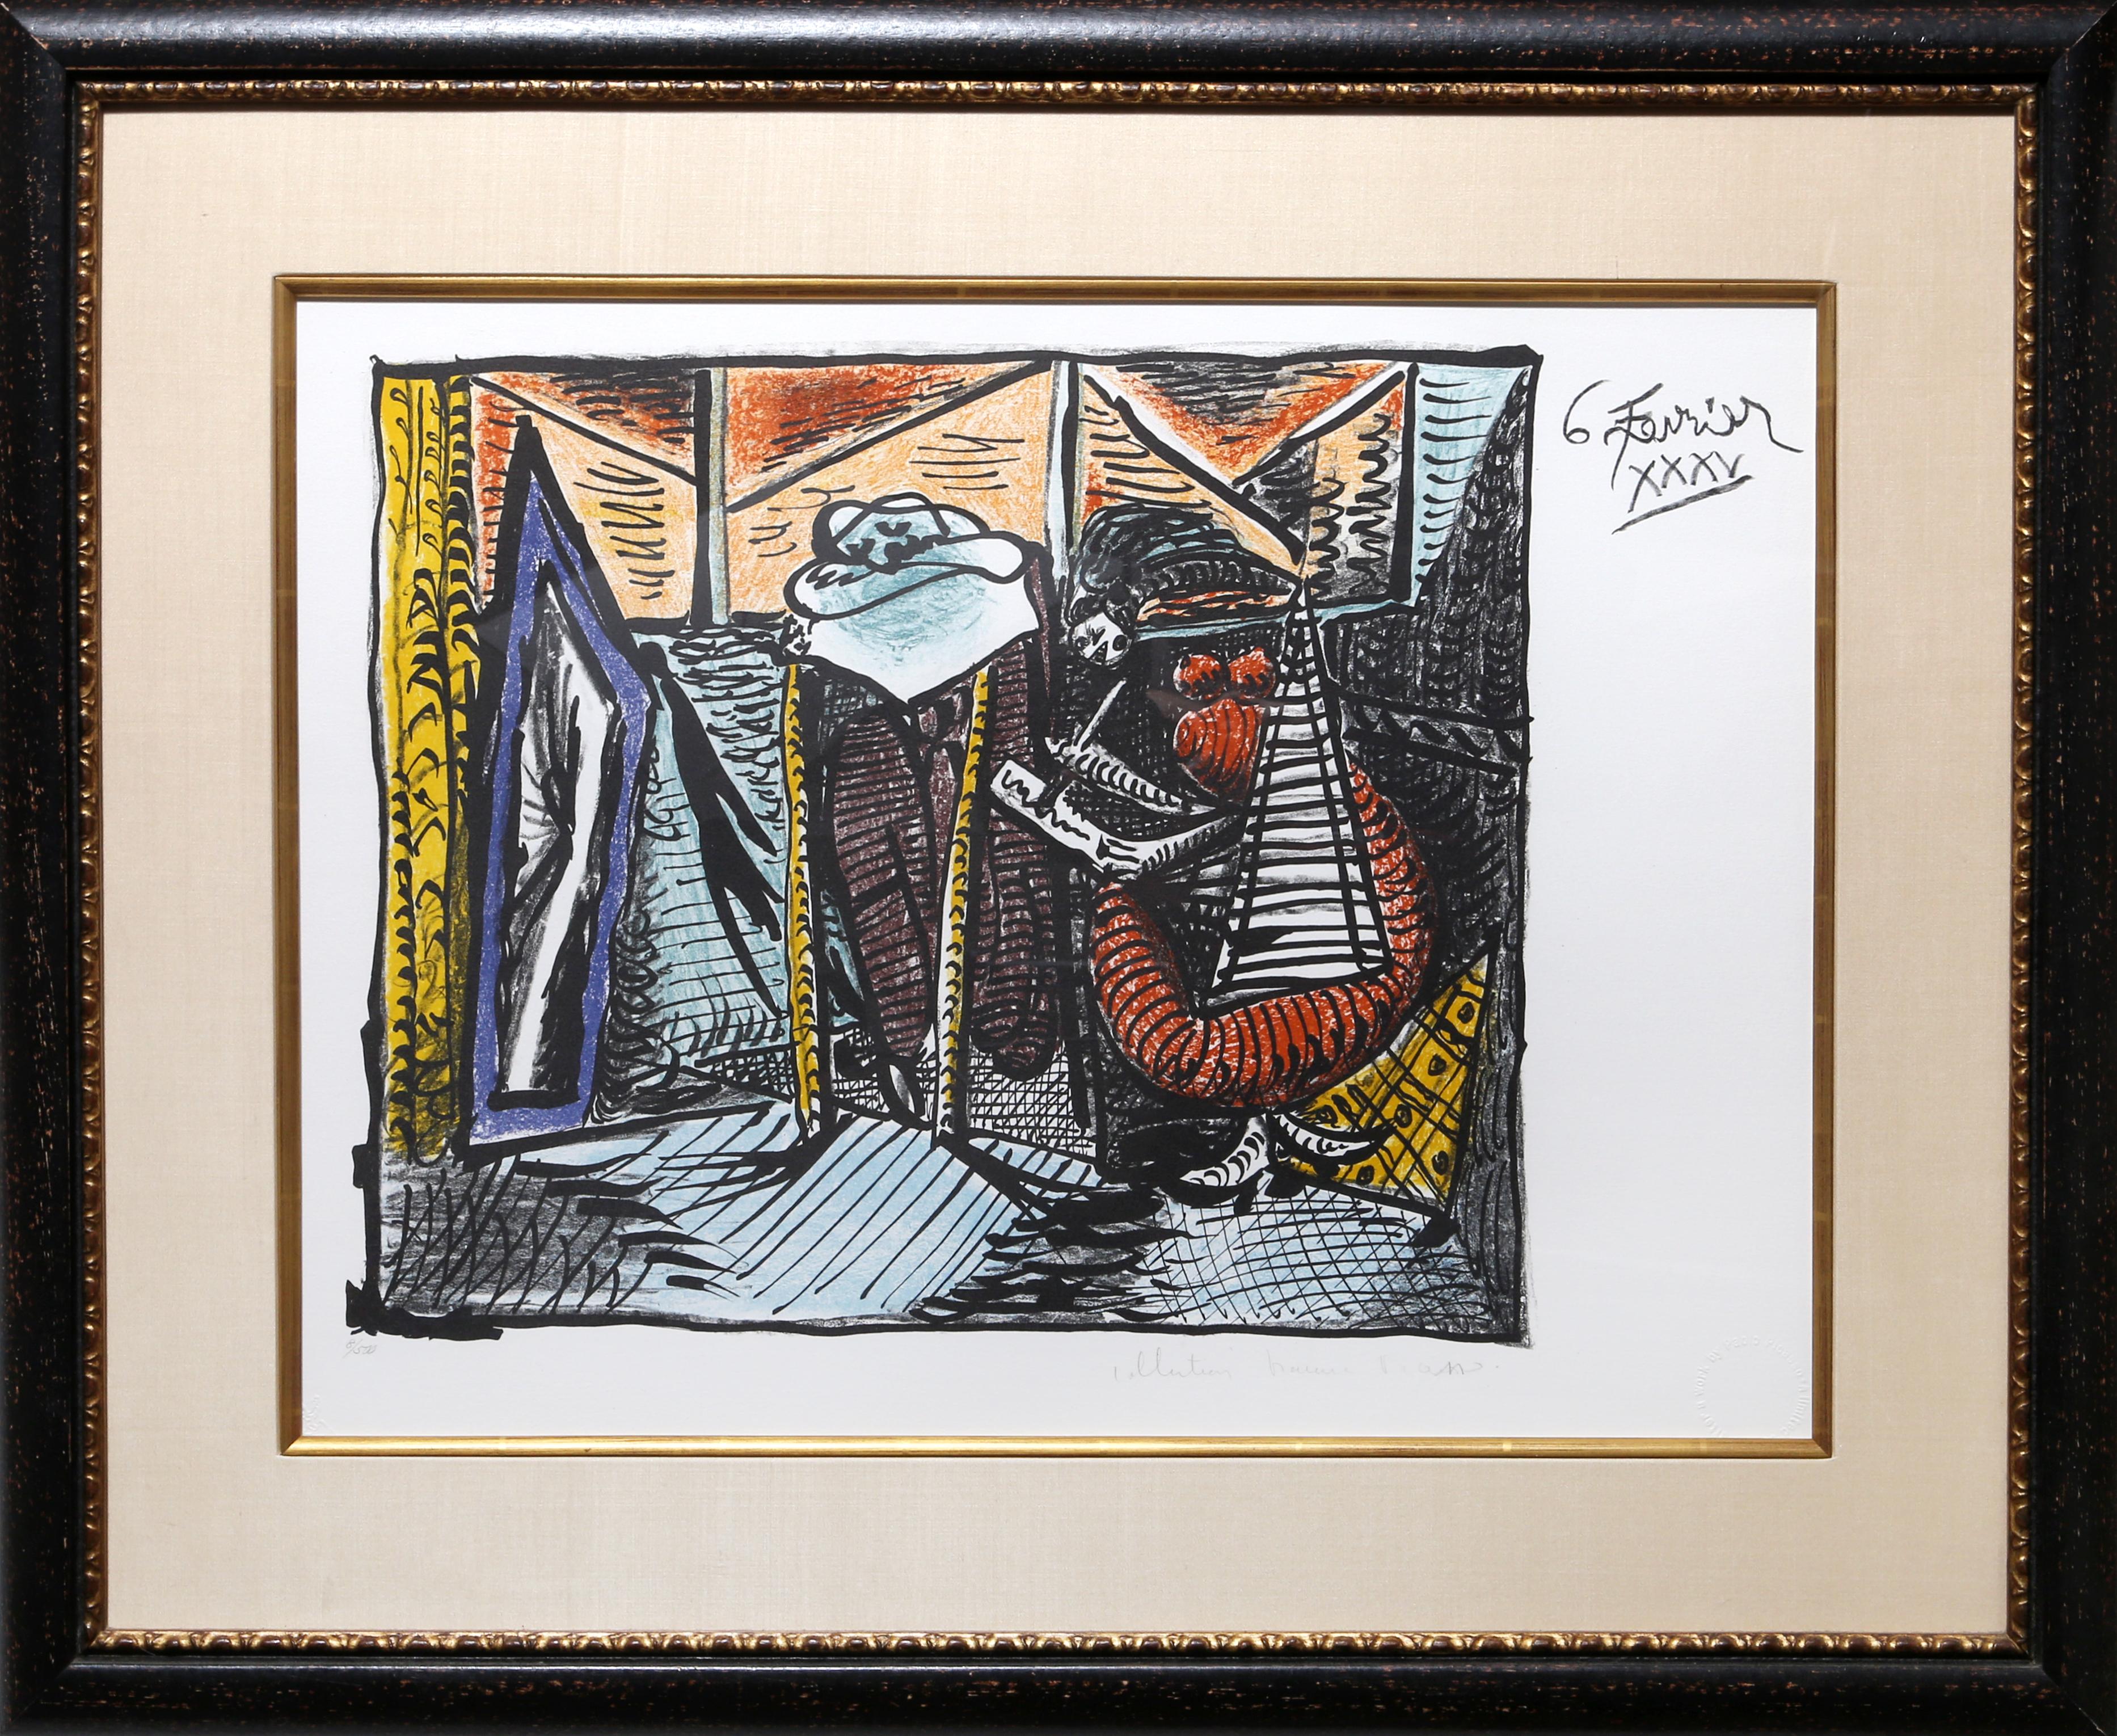 Eine Lithographie aus der Nachlasssammlung Marina Picasso nach dem Gemälde "Femme Dessinant, Femme Assoupi" von Pablo Picasso.  Das Originalgemälde wurde 1935 fertiggestellt. In den 1970er Jahren, nach Picassos Tod, autorisierte Marina Picasso,